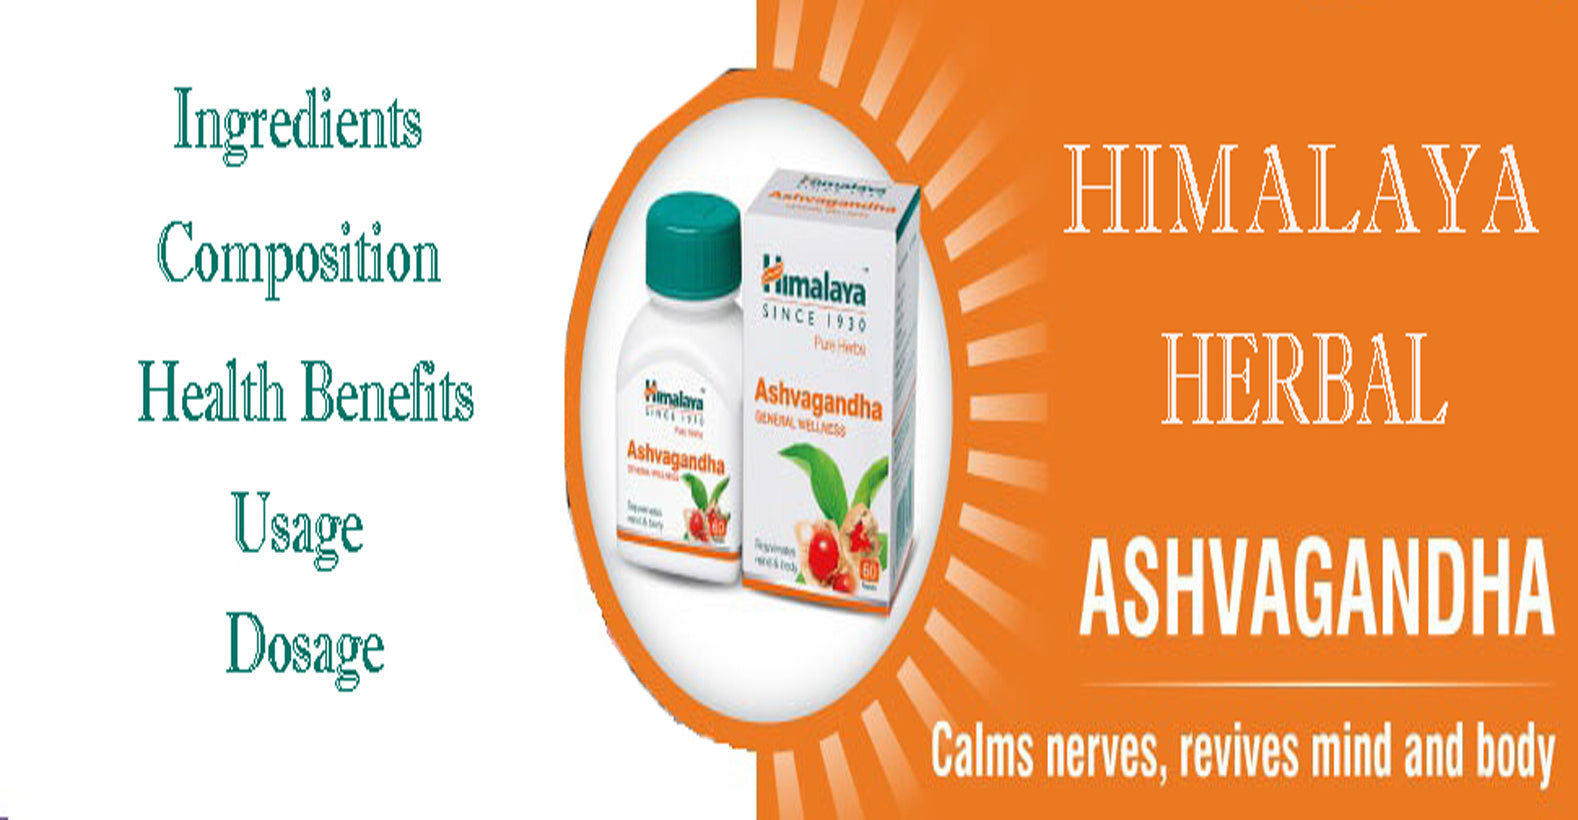 Himalaya Herbal Ashvagandaha tablets